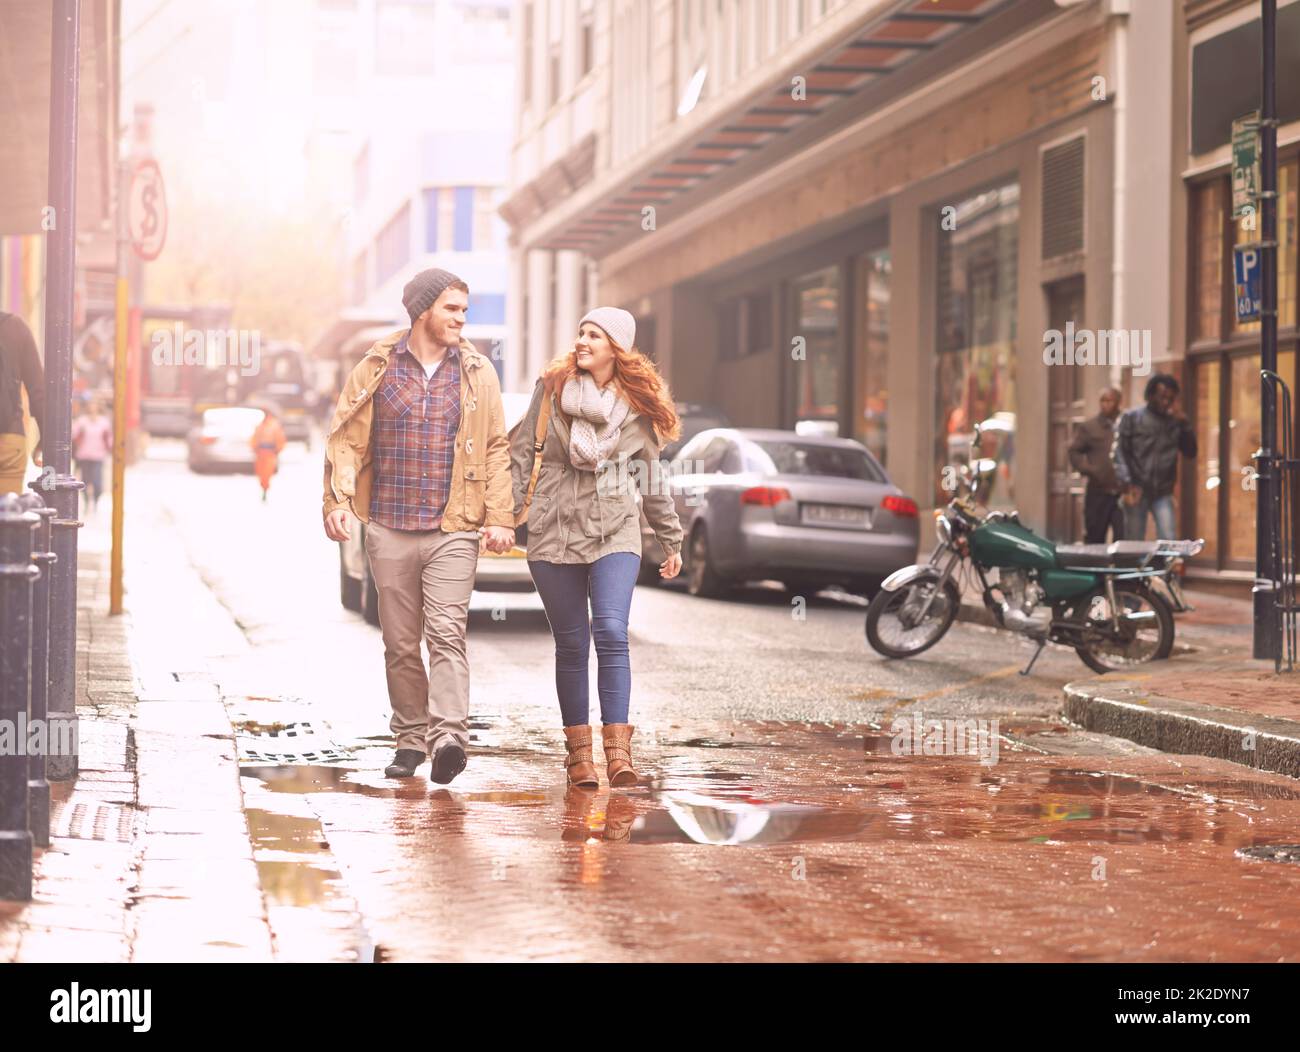 Goditi una passeggiata invernale insieme. Scatto di una giovane coppia felice che cammina attraverso una zona urbana insieme. Foto Stock